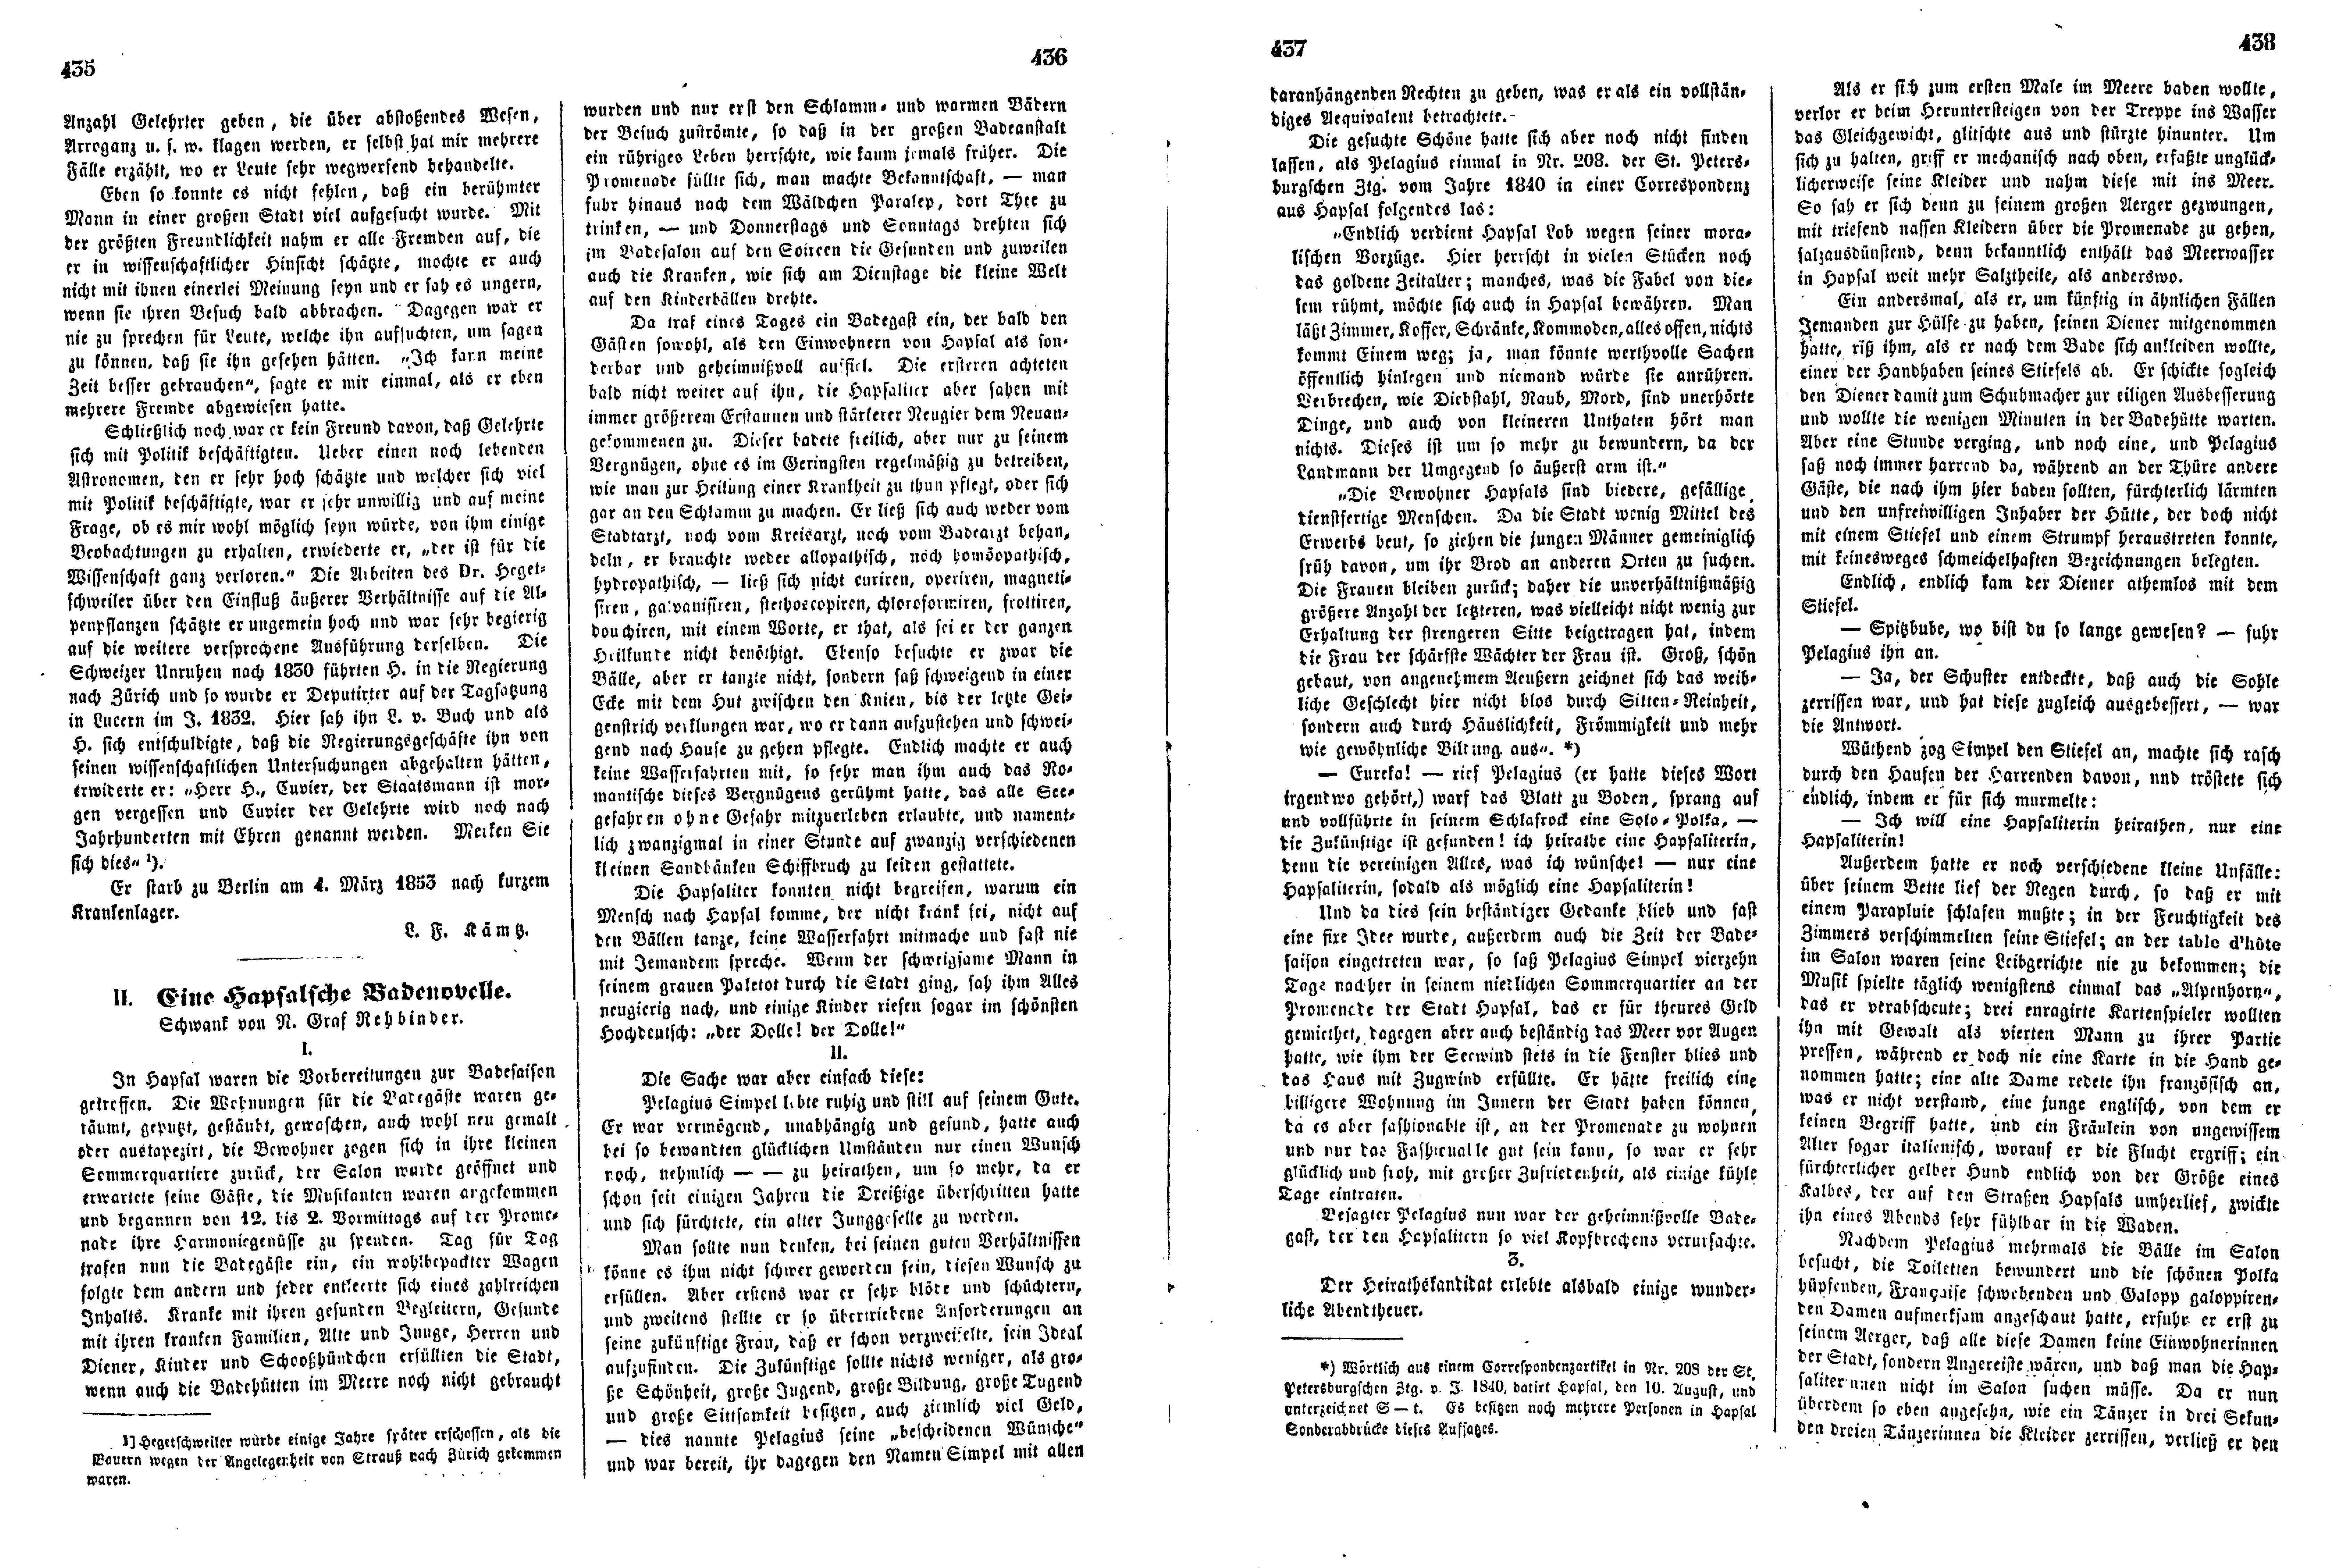 Eine Hapsalsche Badenovelle (1853) | 1. (435-438) Основной текст